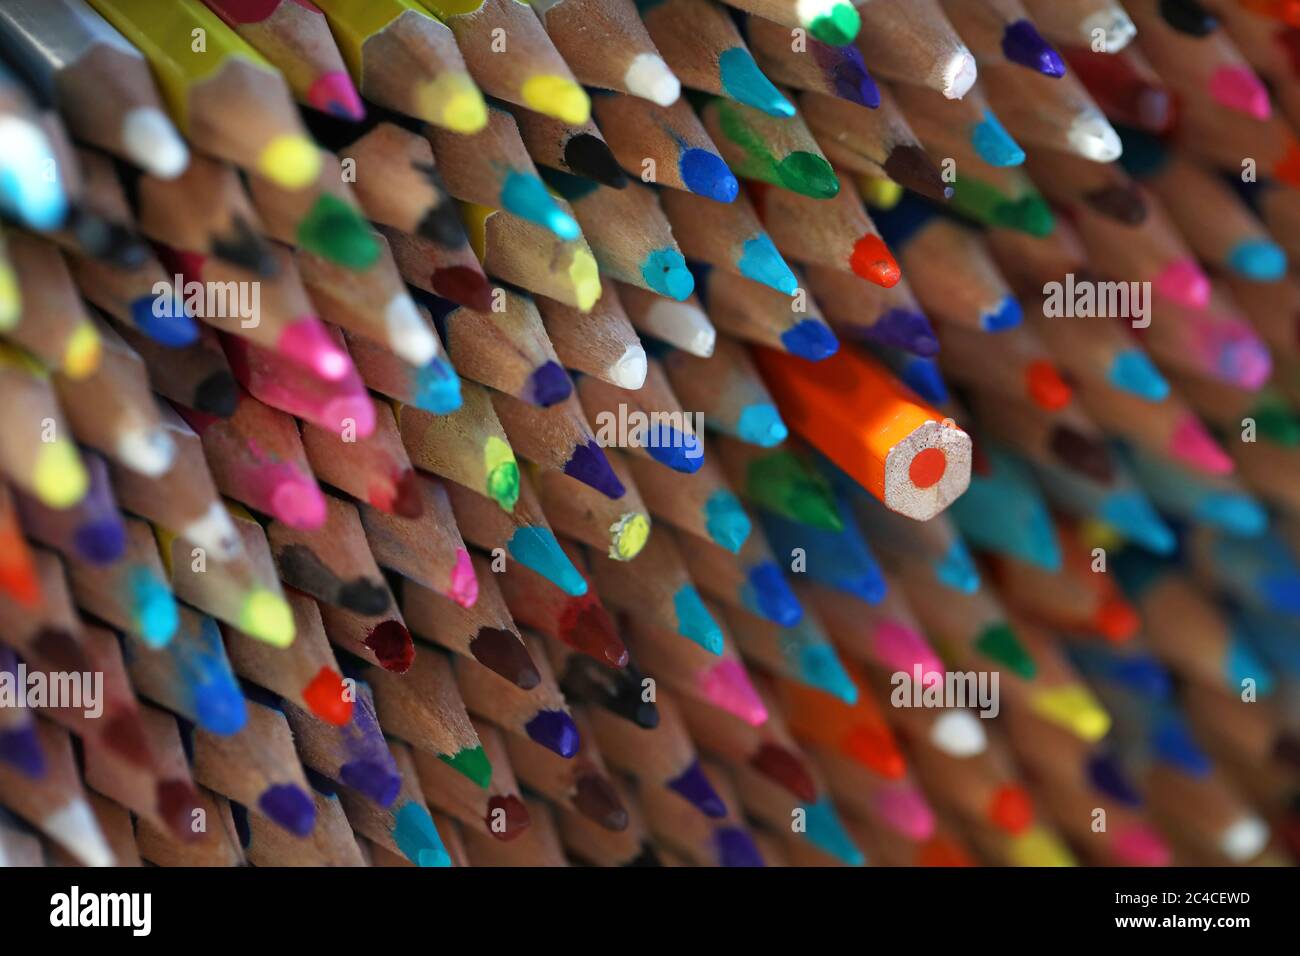 Ein großer Stapel scharfer, mehrfarbiger Stifte, wobei einer in die falsche Richtung gedreht wurde. Nicht passend, anders, alternativ, stehend o Stockfoto